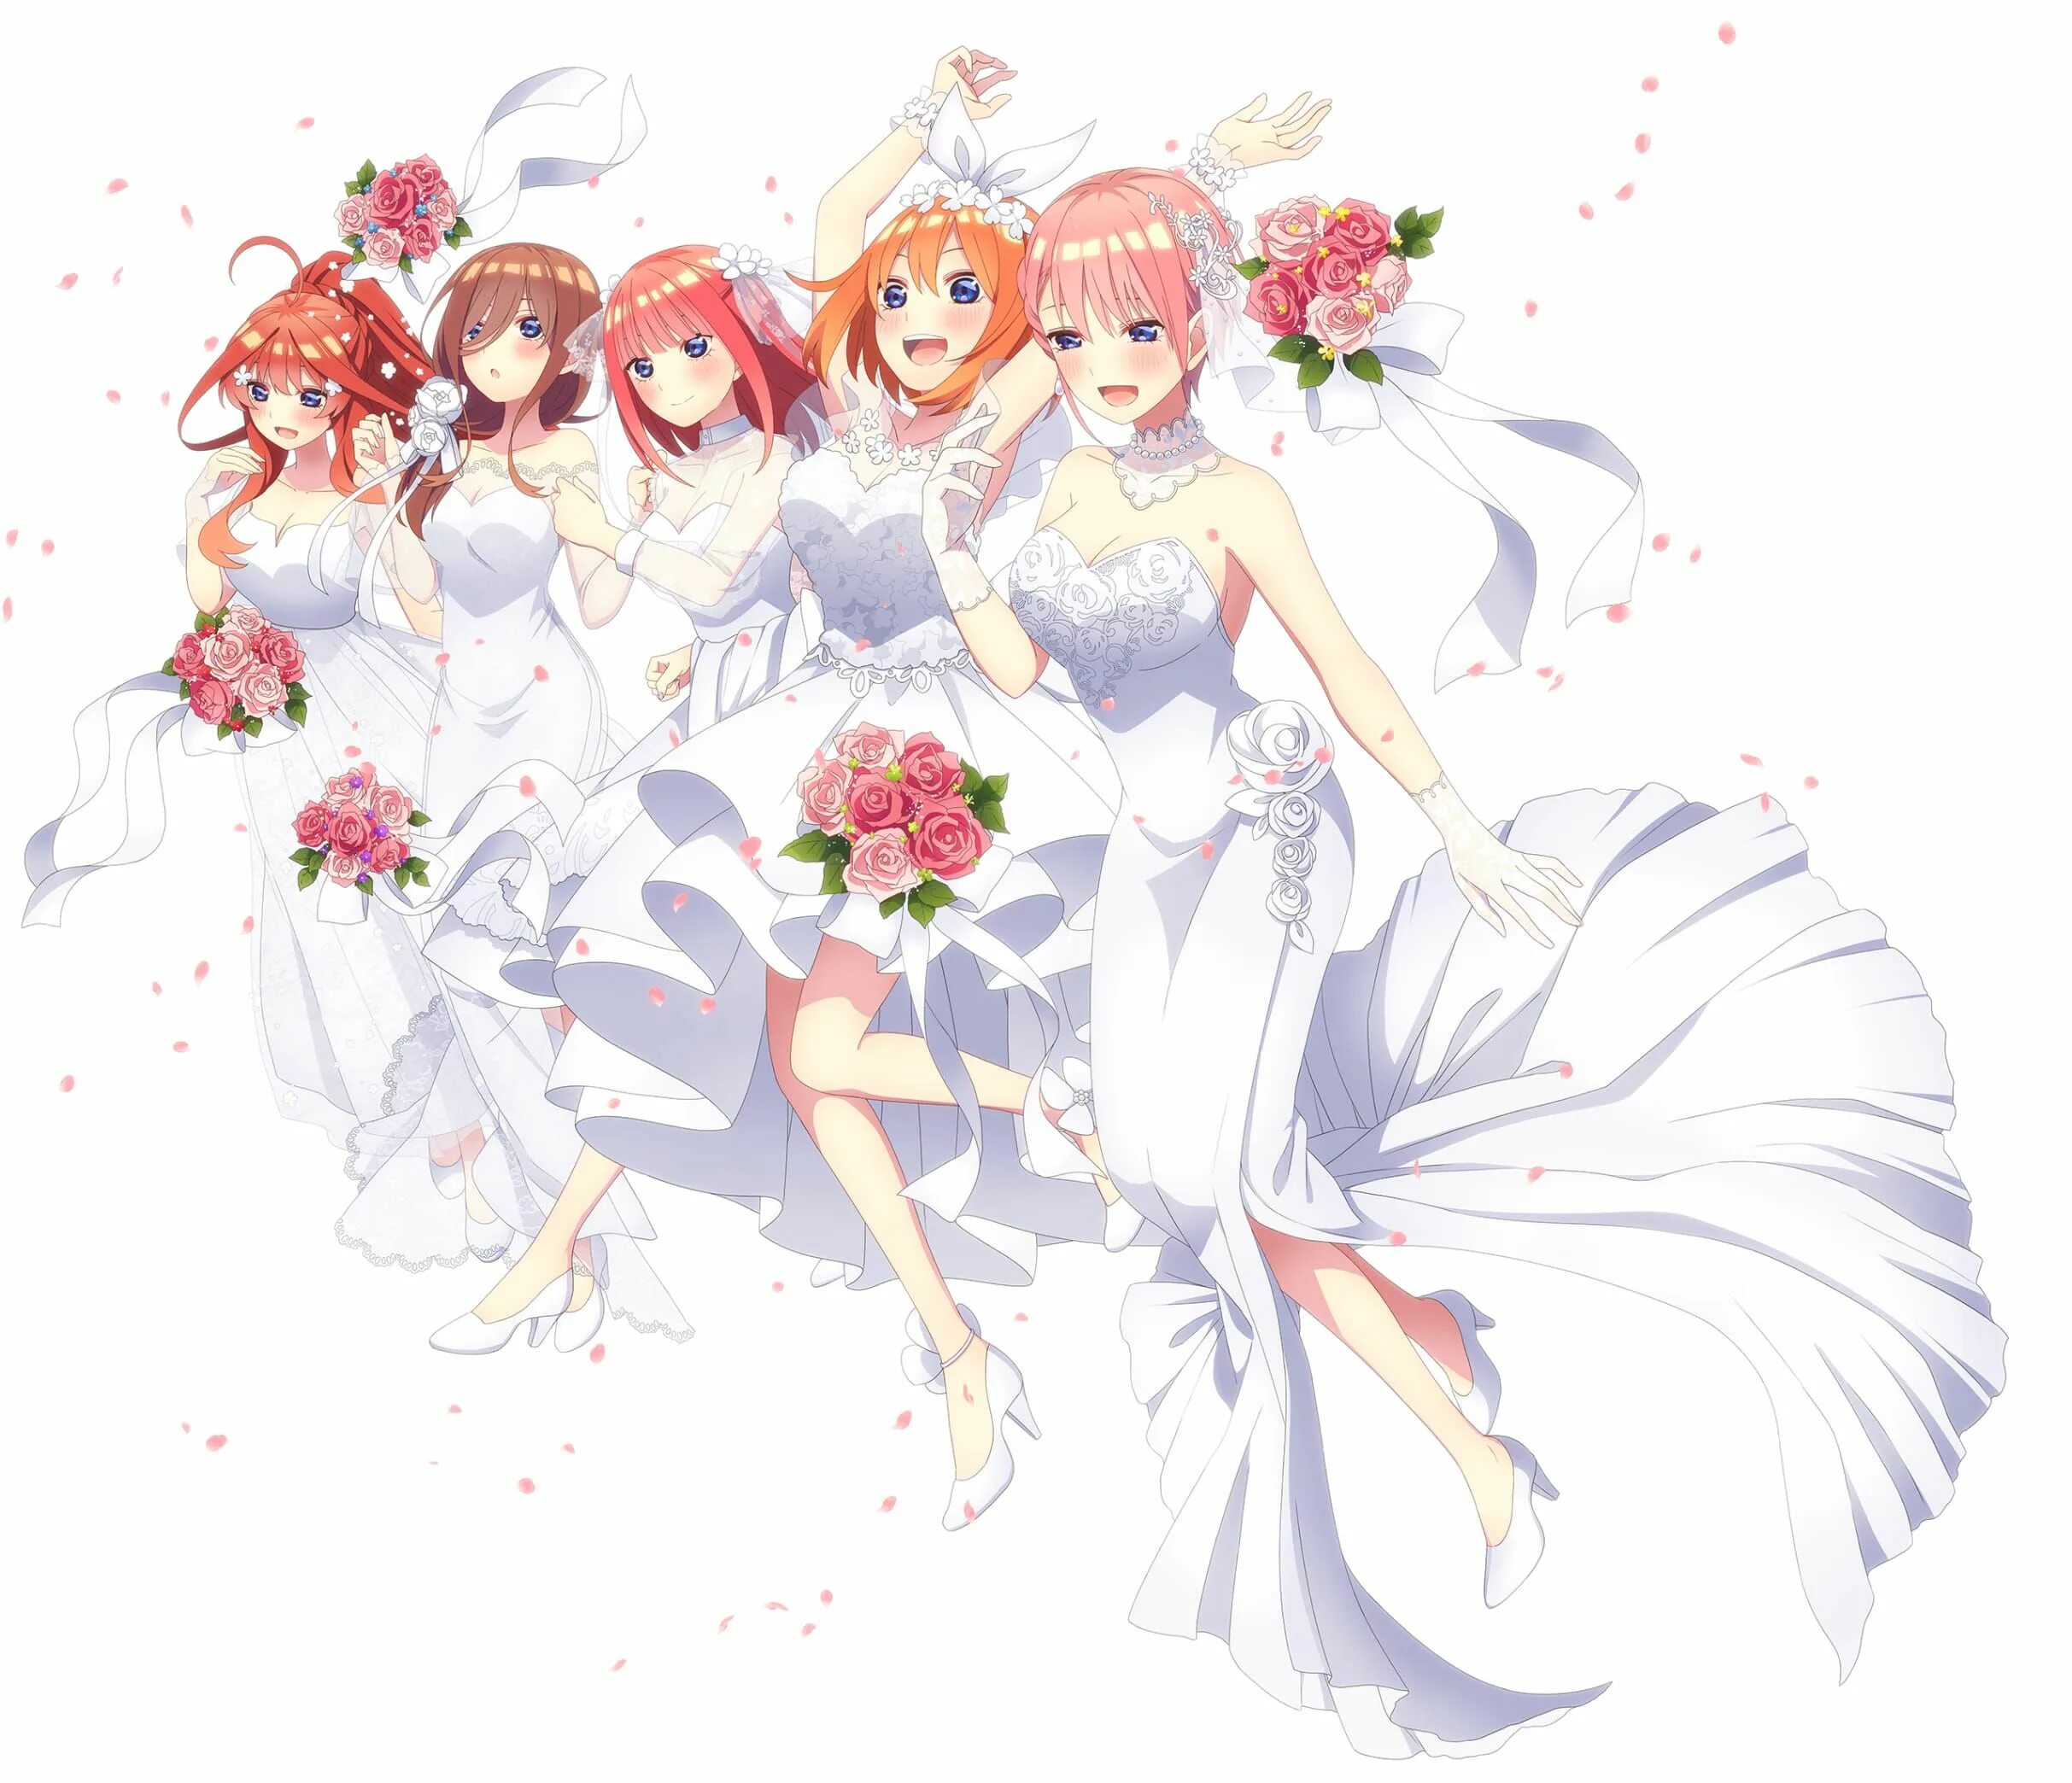 Невеста экстра любовь обзор. Пять невест / 5-TOUBUN no Hanayome. The quintessential Quintuplets. Пять невест сёстры Накано.